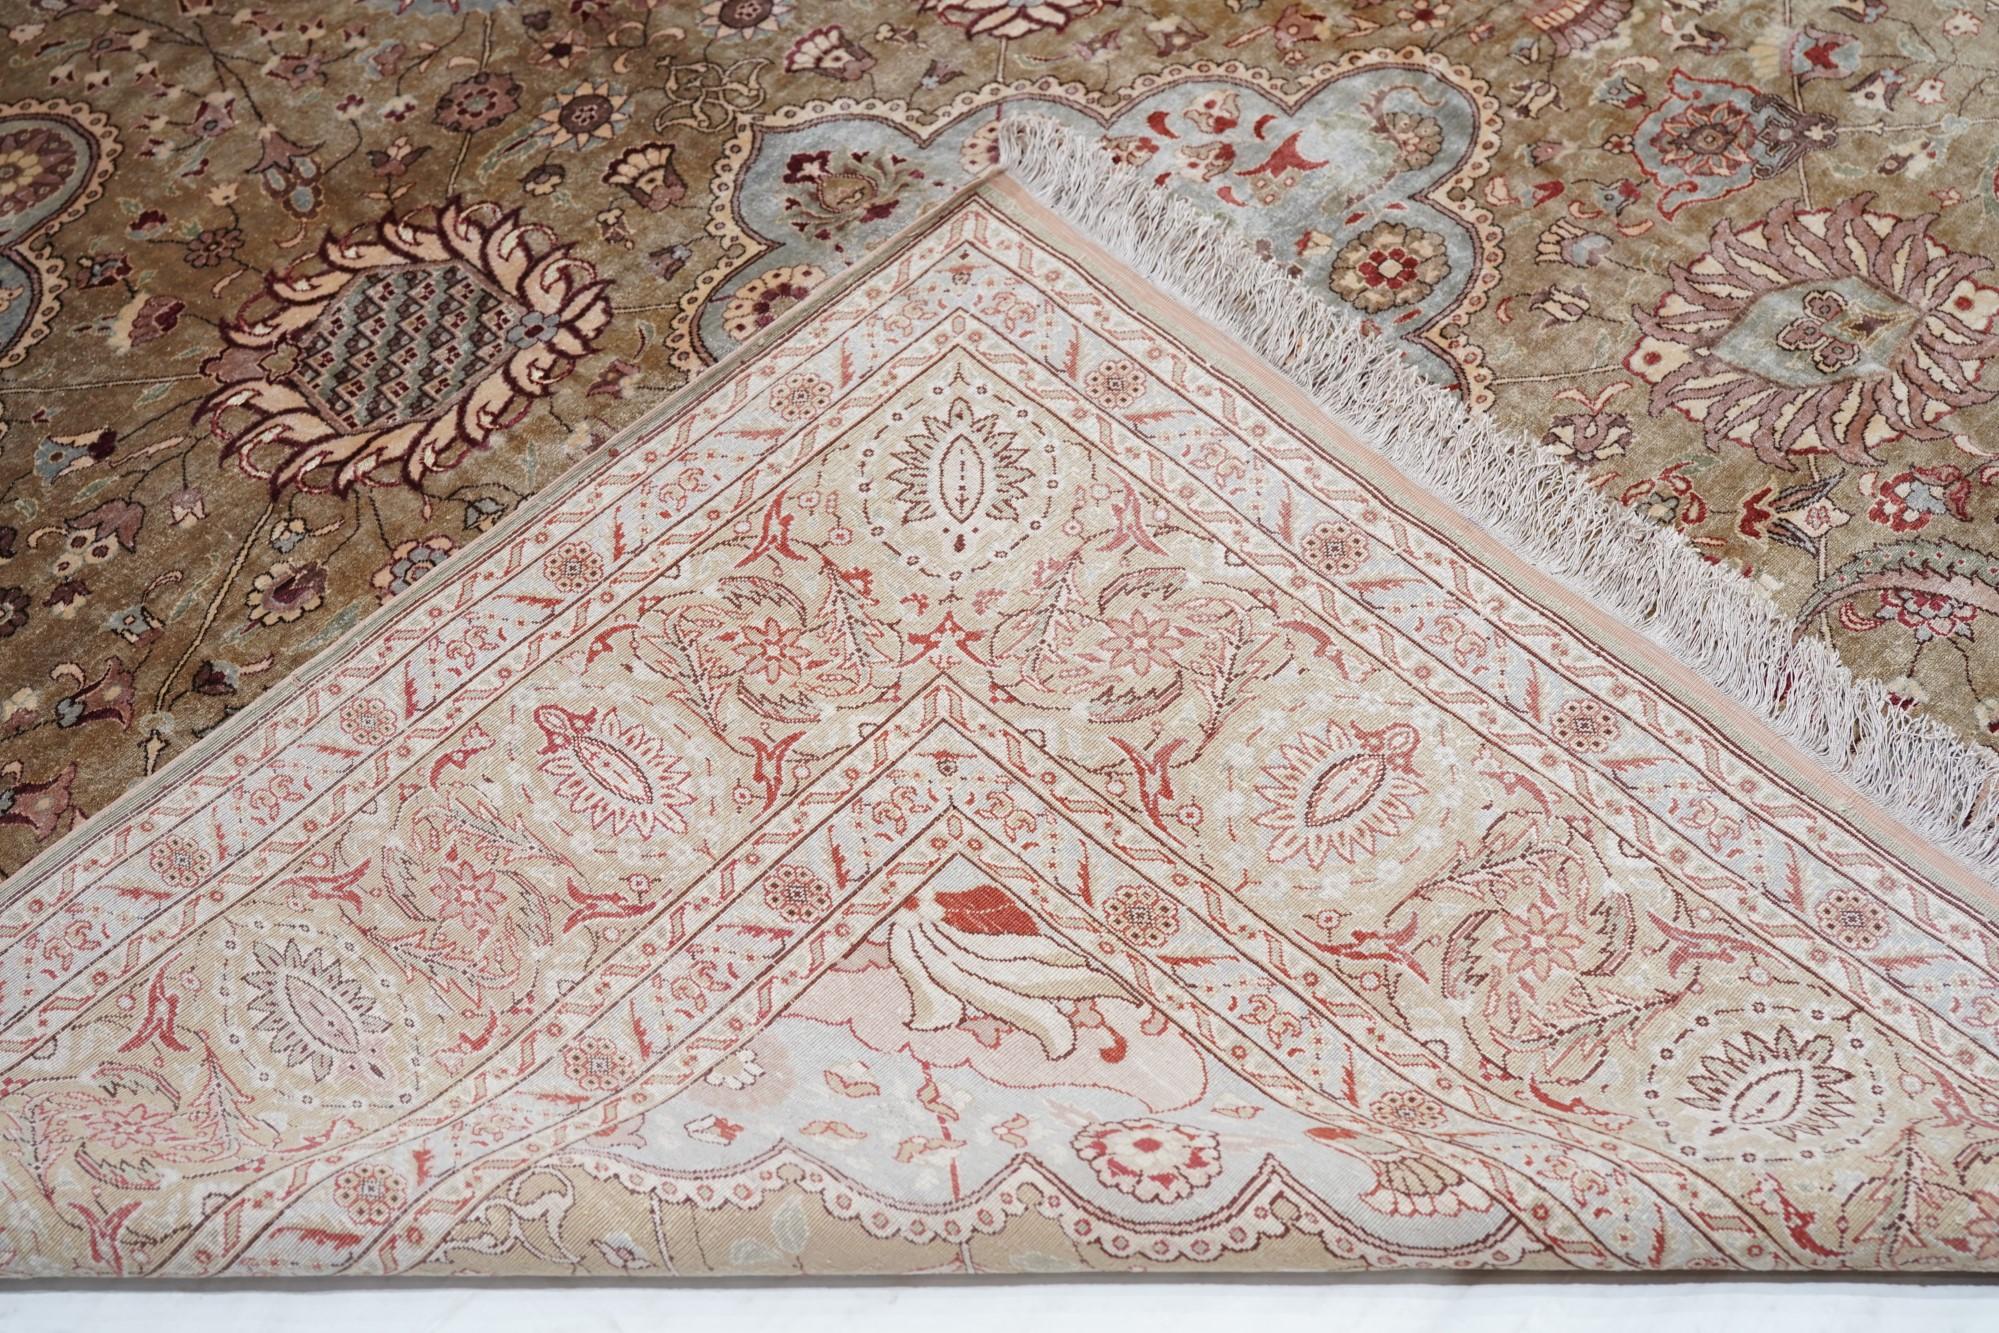 Tapis ancien turc Hereke 6'7'' x 9'10''. Les tapis en soie Hereke sont presque toujours de style persan. Ici, le champ brun rouge clair présente deux écussons festonnés importants de couleur perle et deux demi-écussons importants, ainsi qu'une